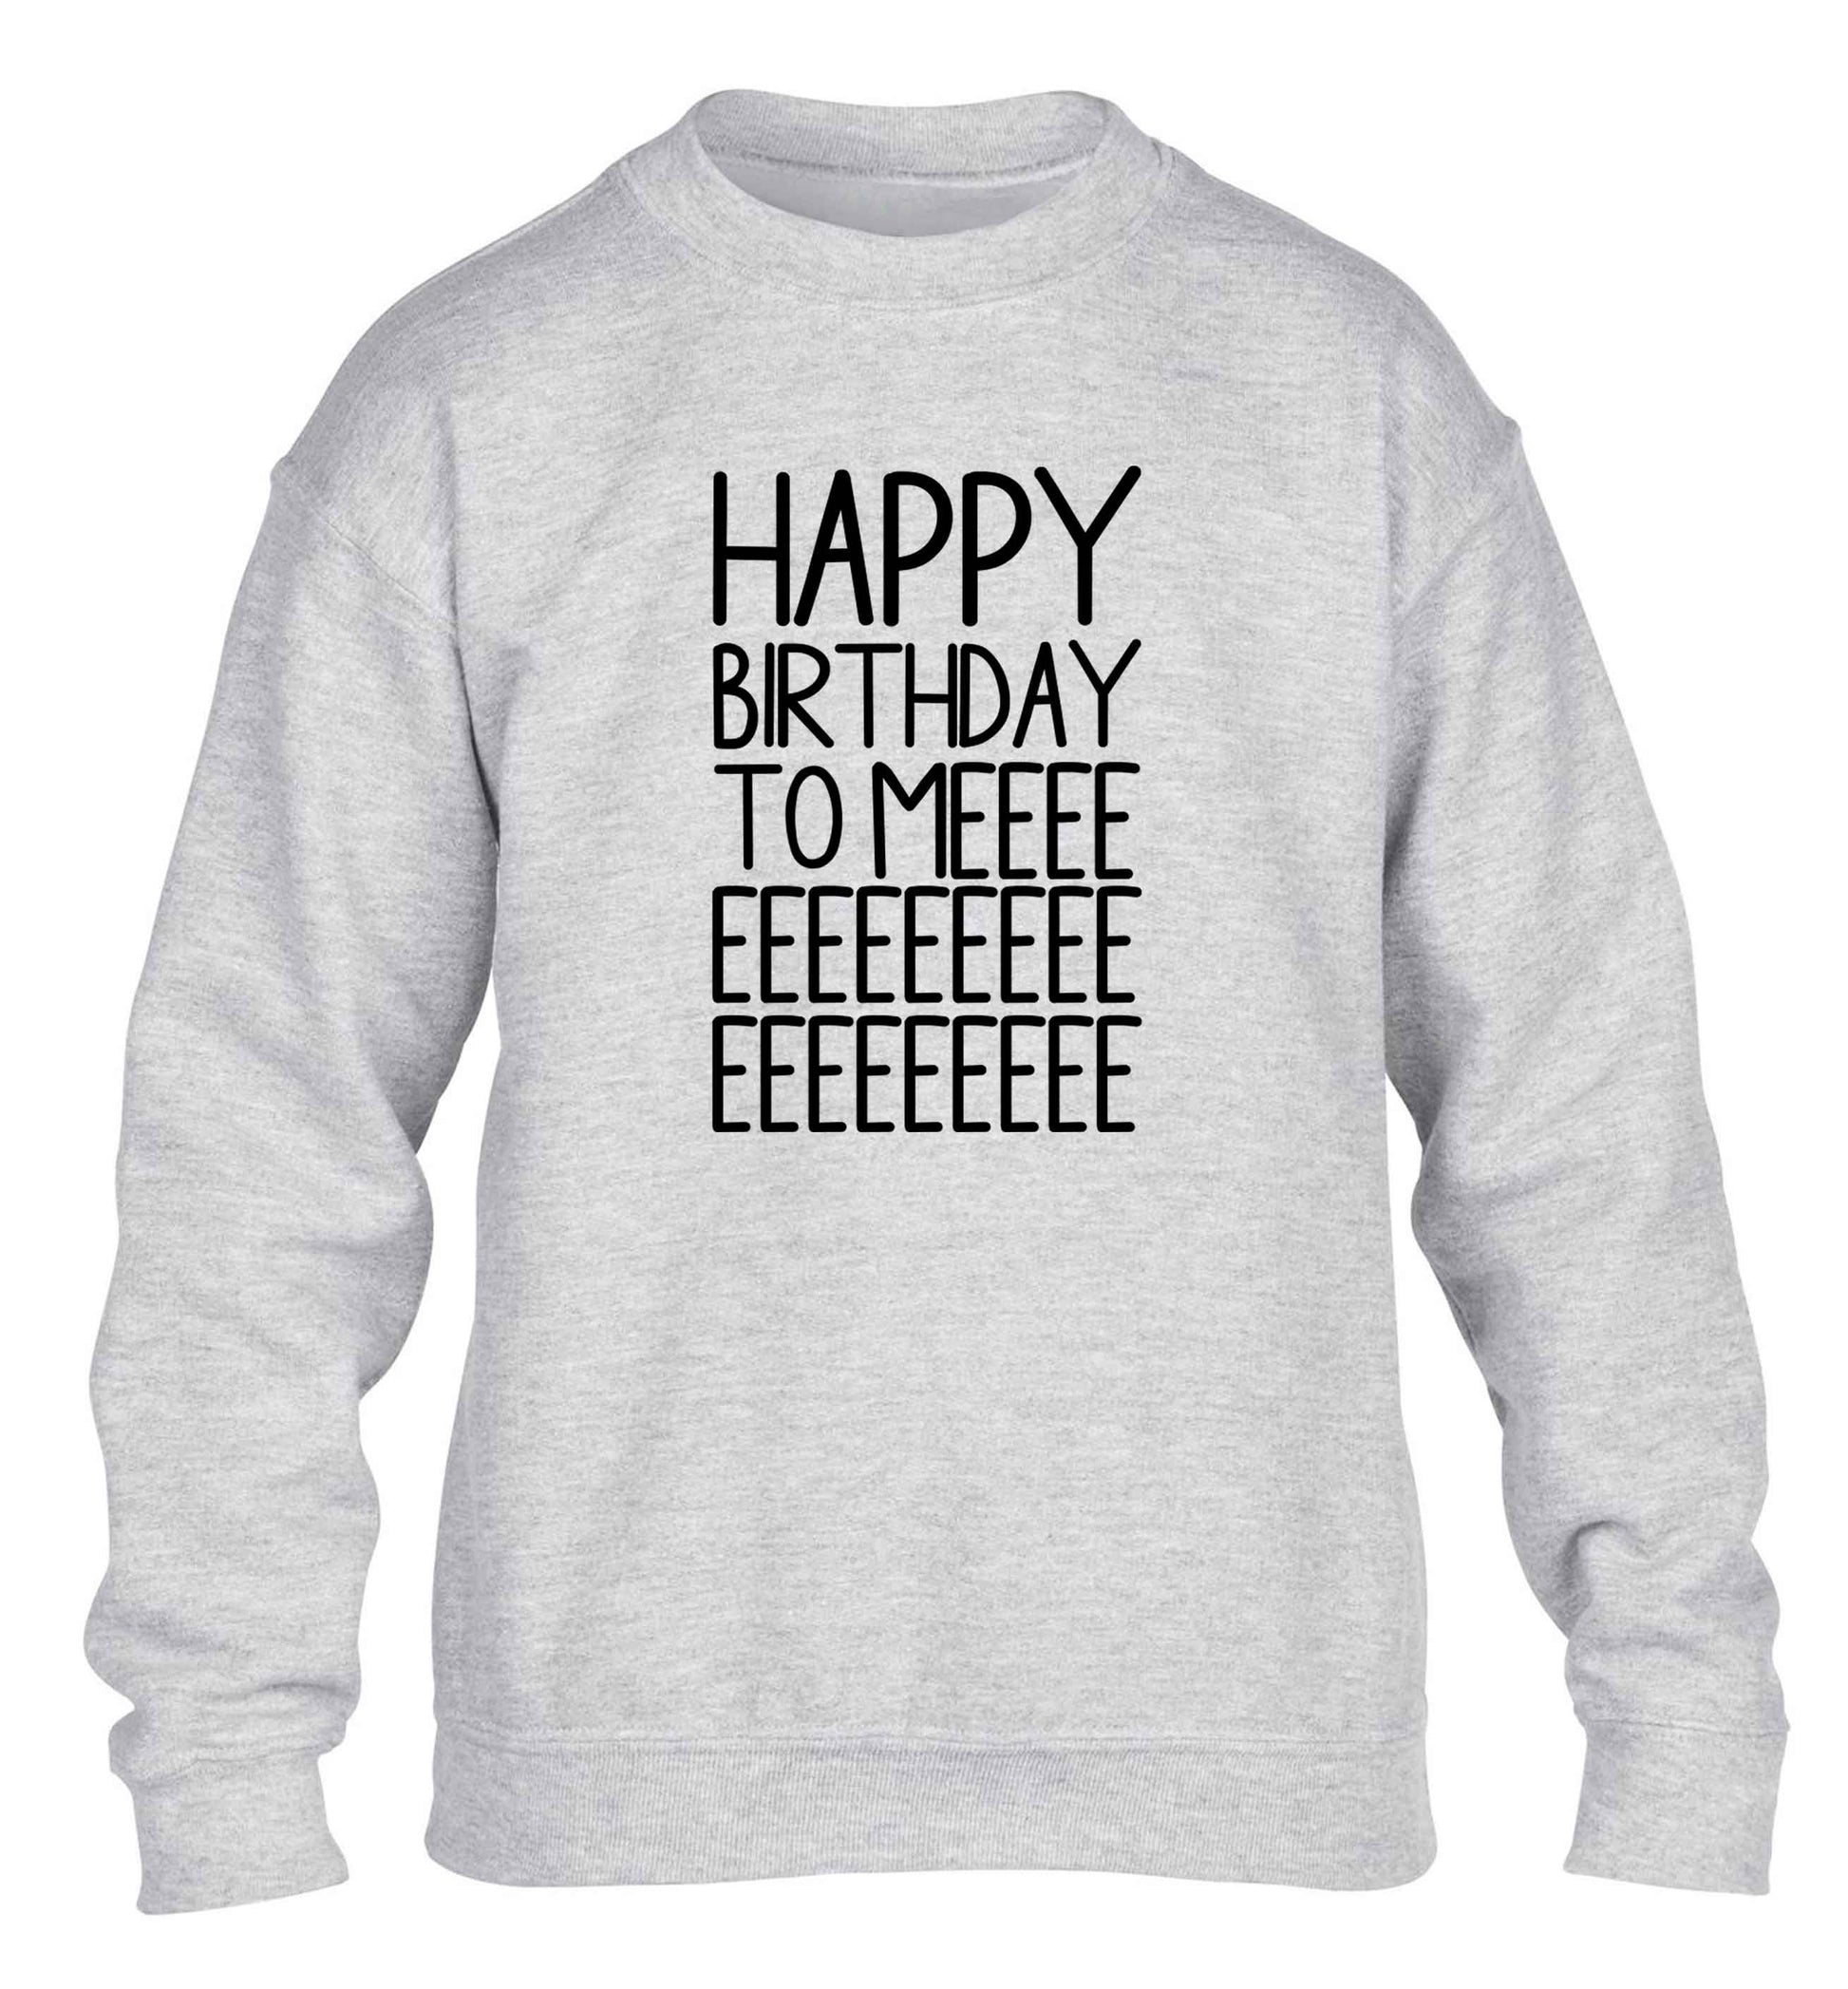 Happy birthday to me children's grey sweater 12-13 Years